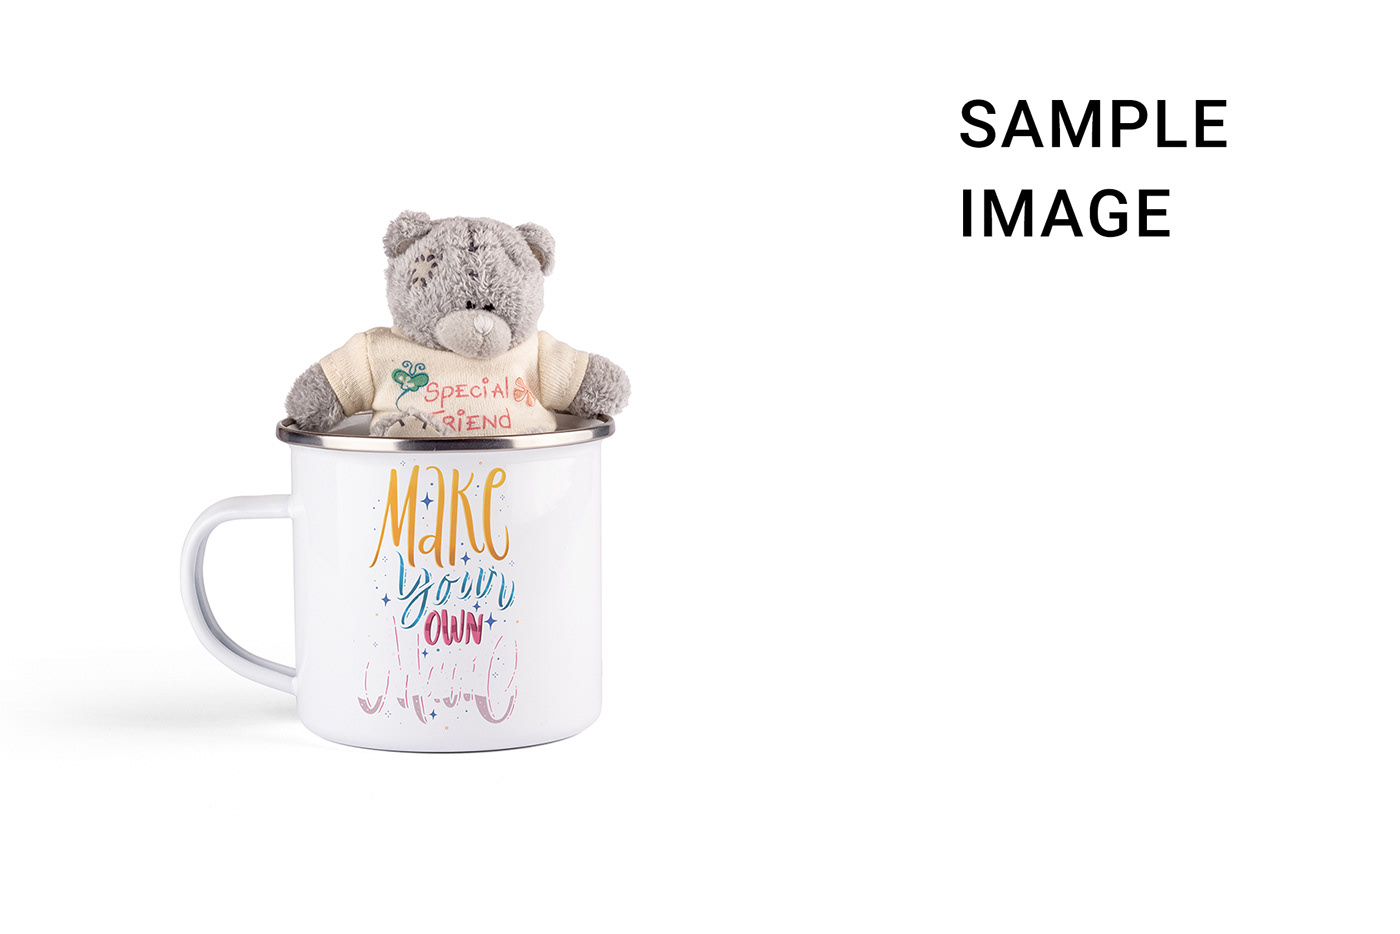 enamel enamel mug enamel mug mock-up Enamel Mug Mockup enamel mug template Mockup Mug  Teddy template toy